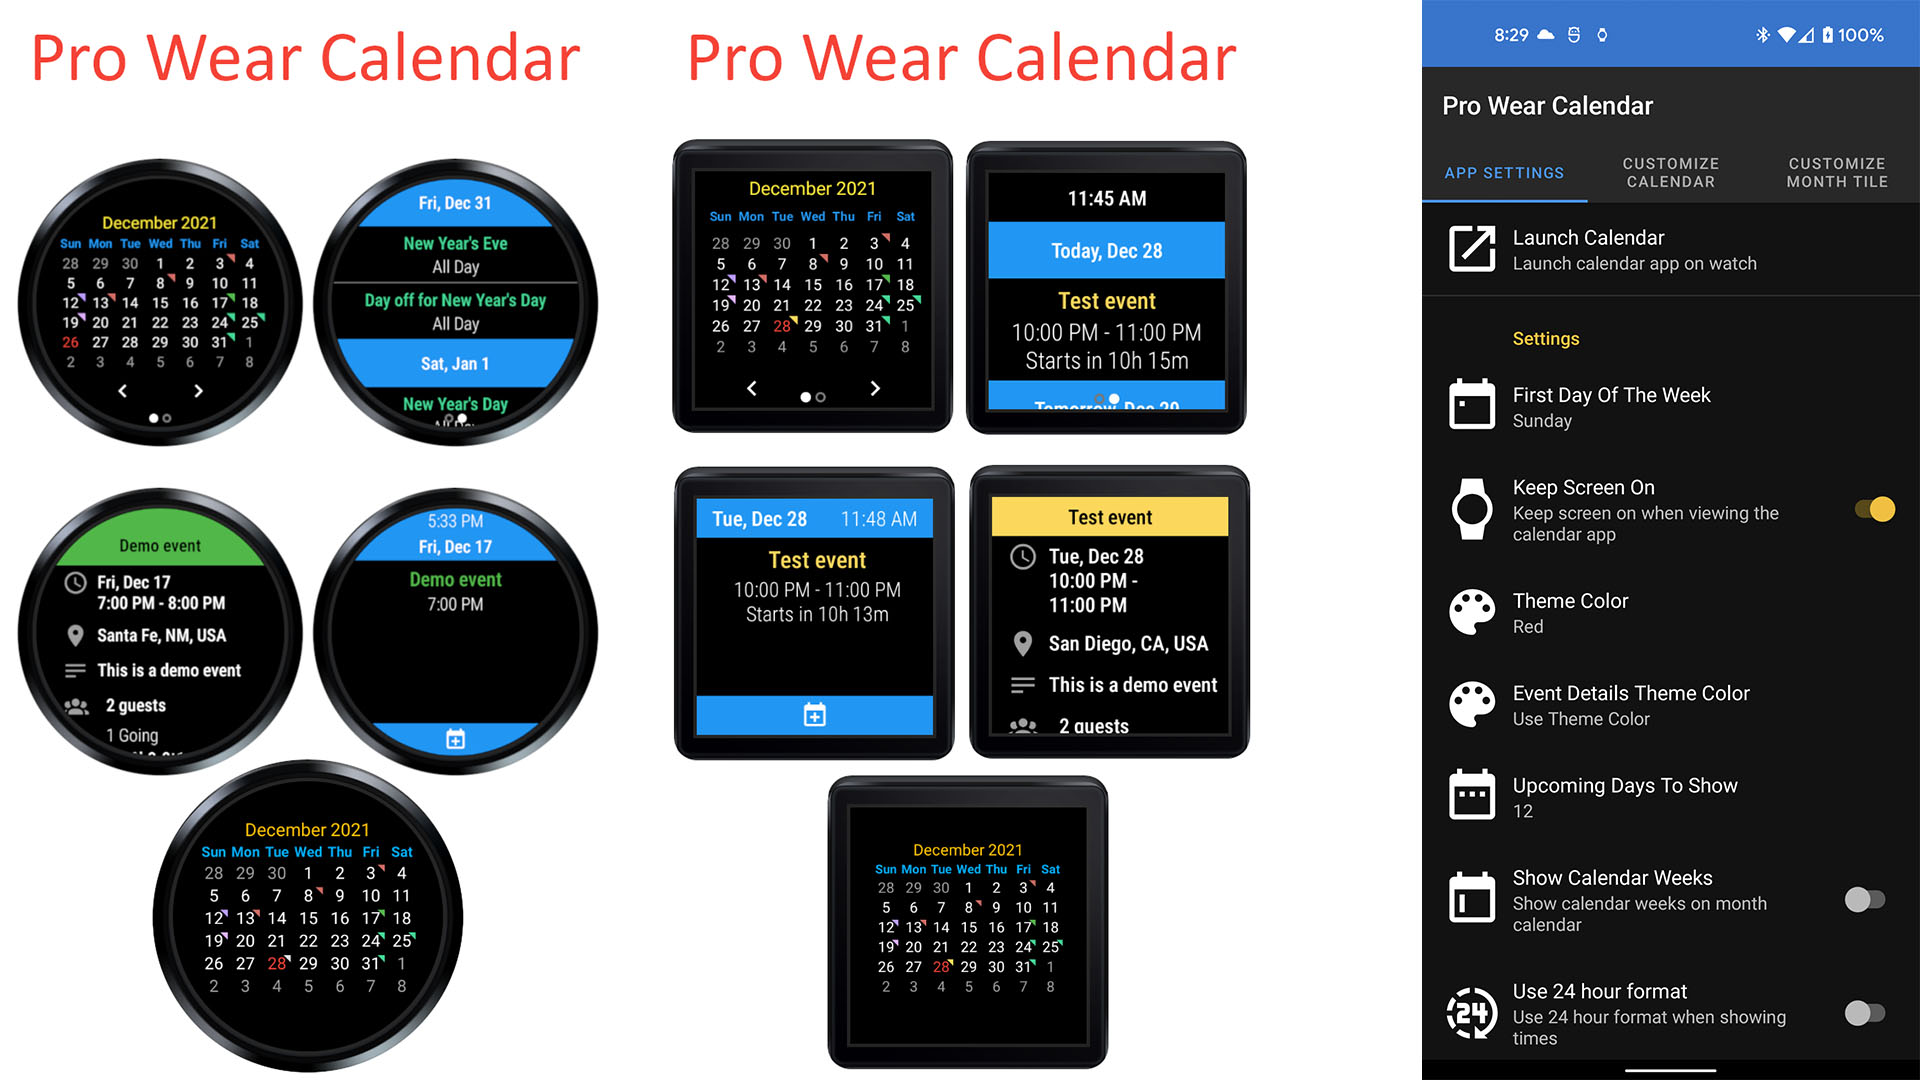 Pro Wear Calendar screenshot 2022